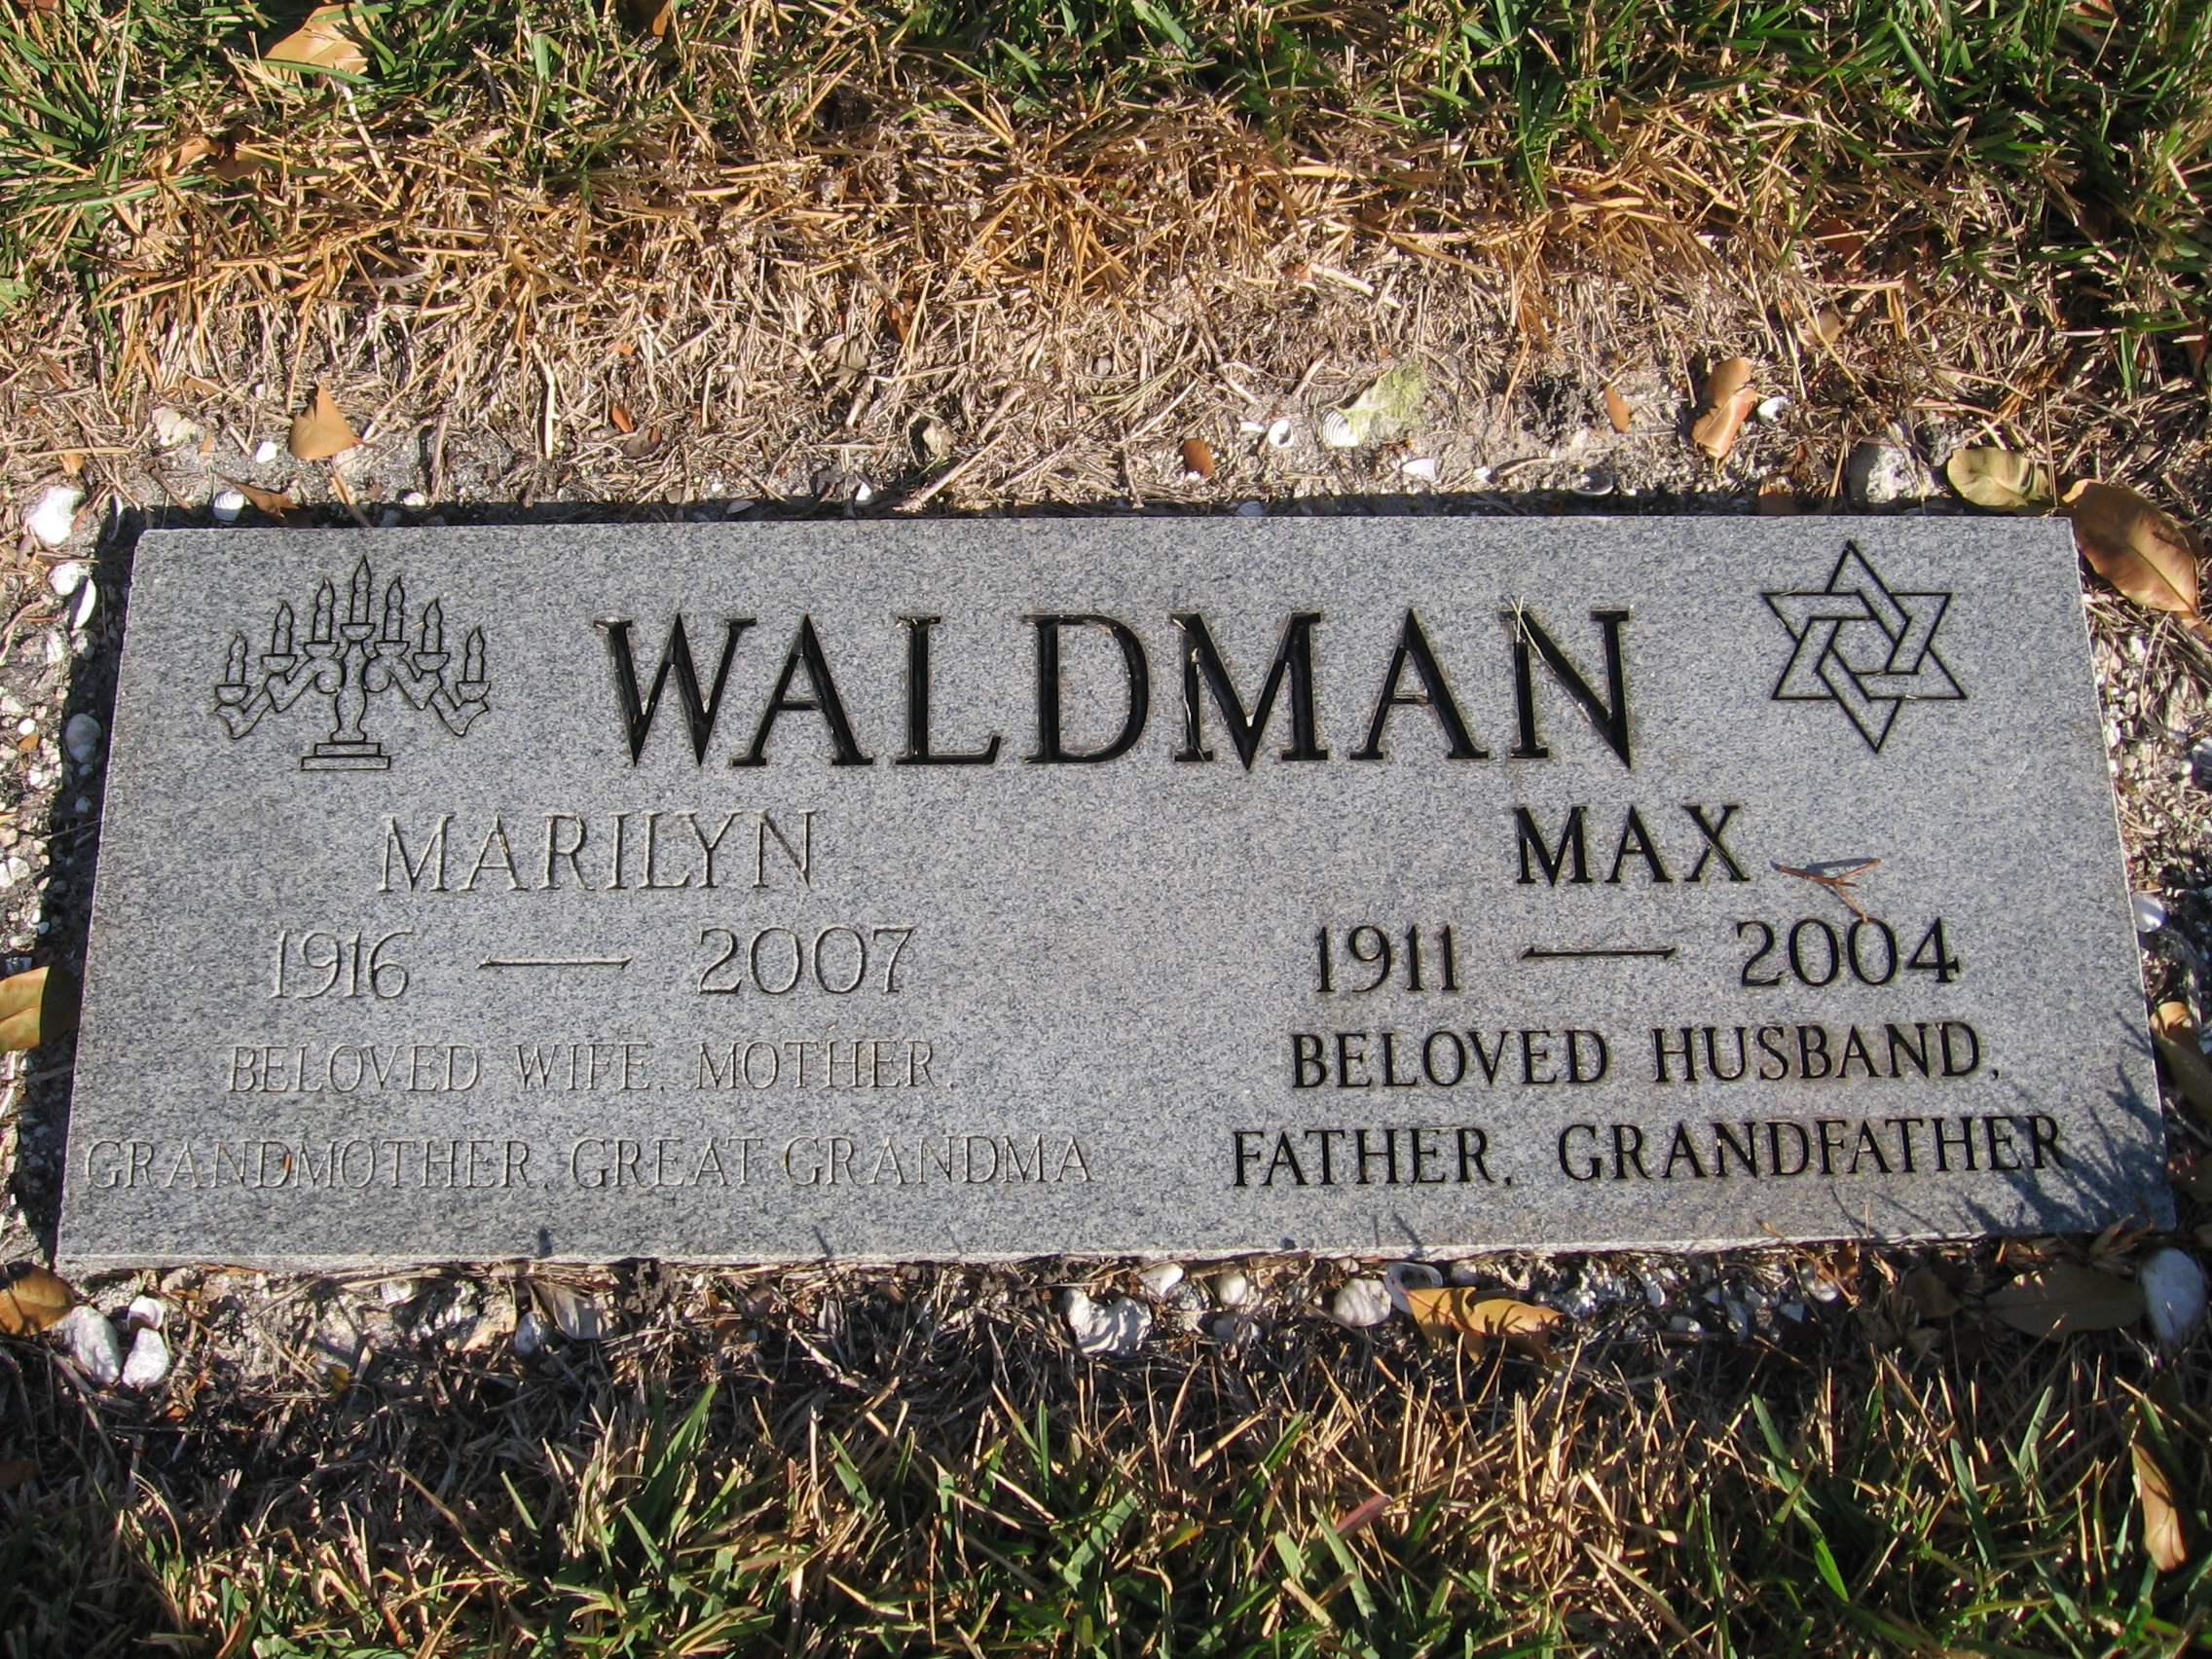 Max Waldman